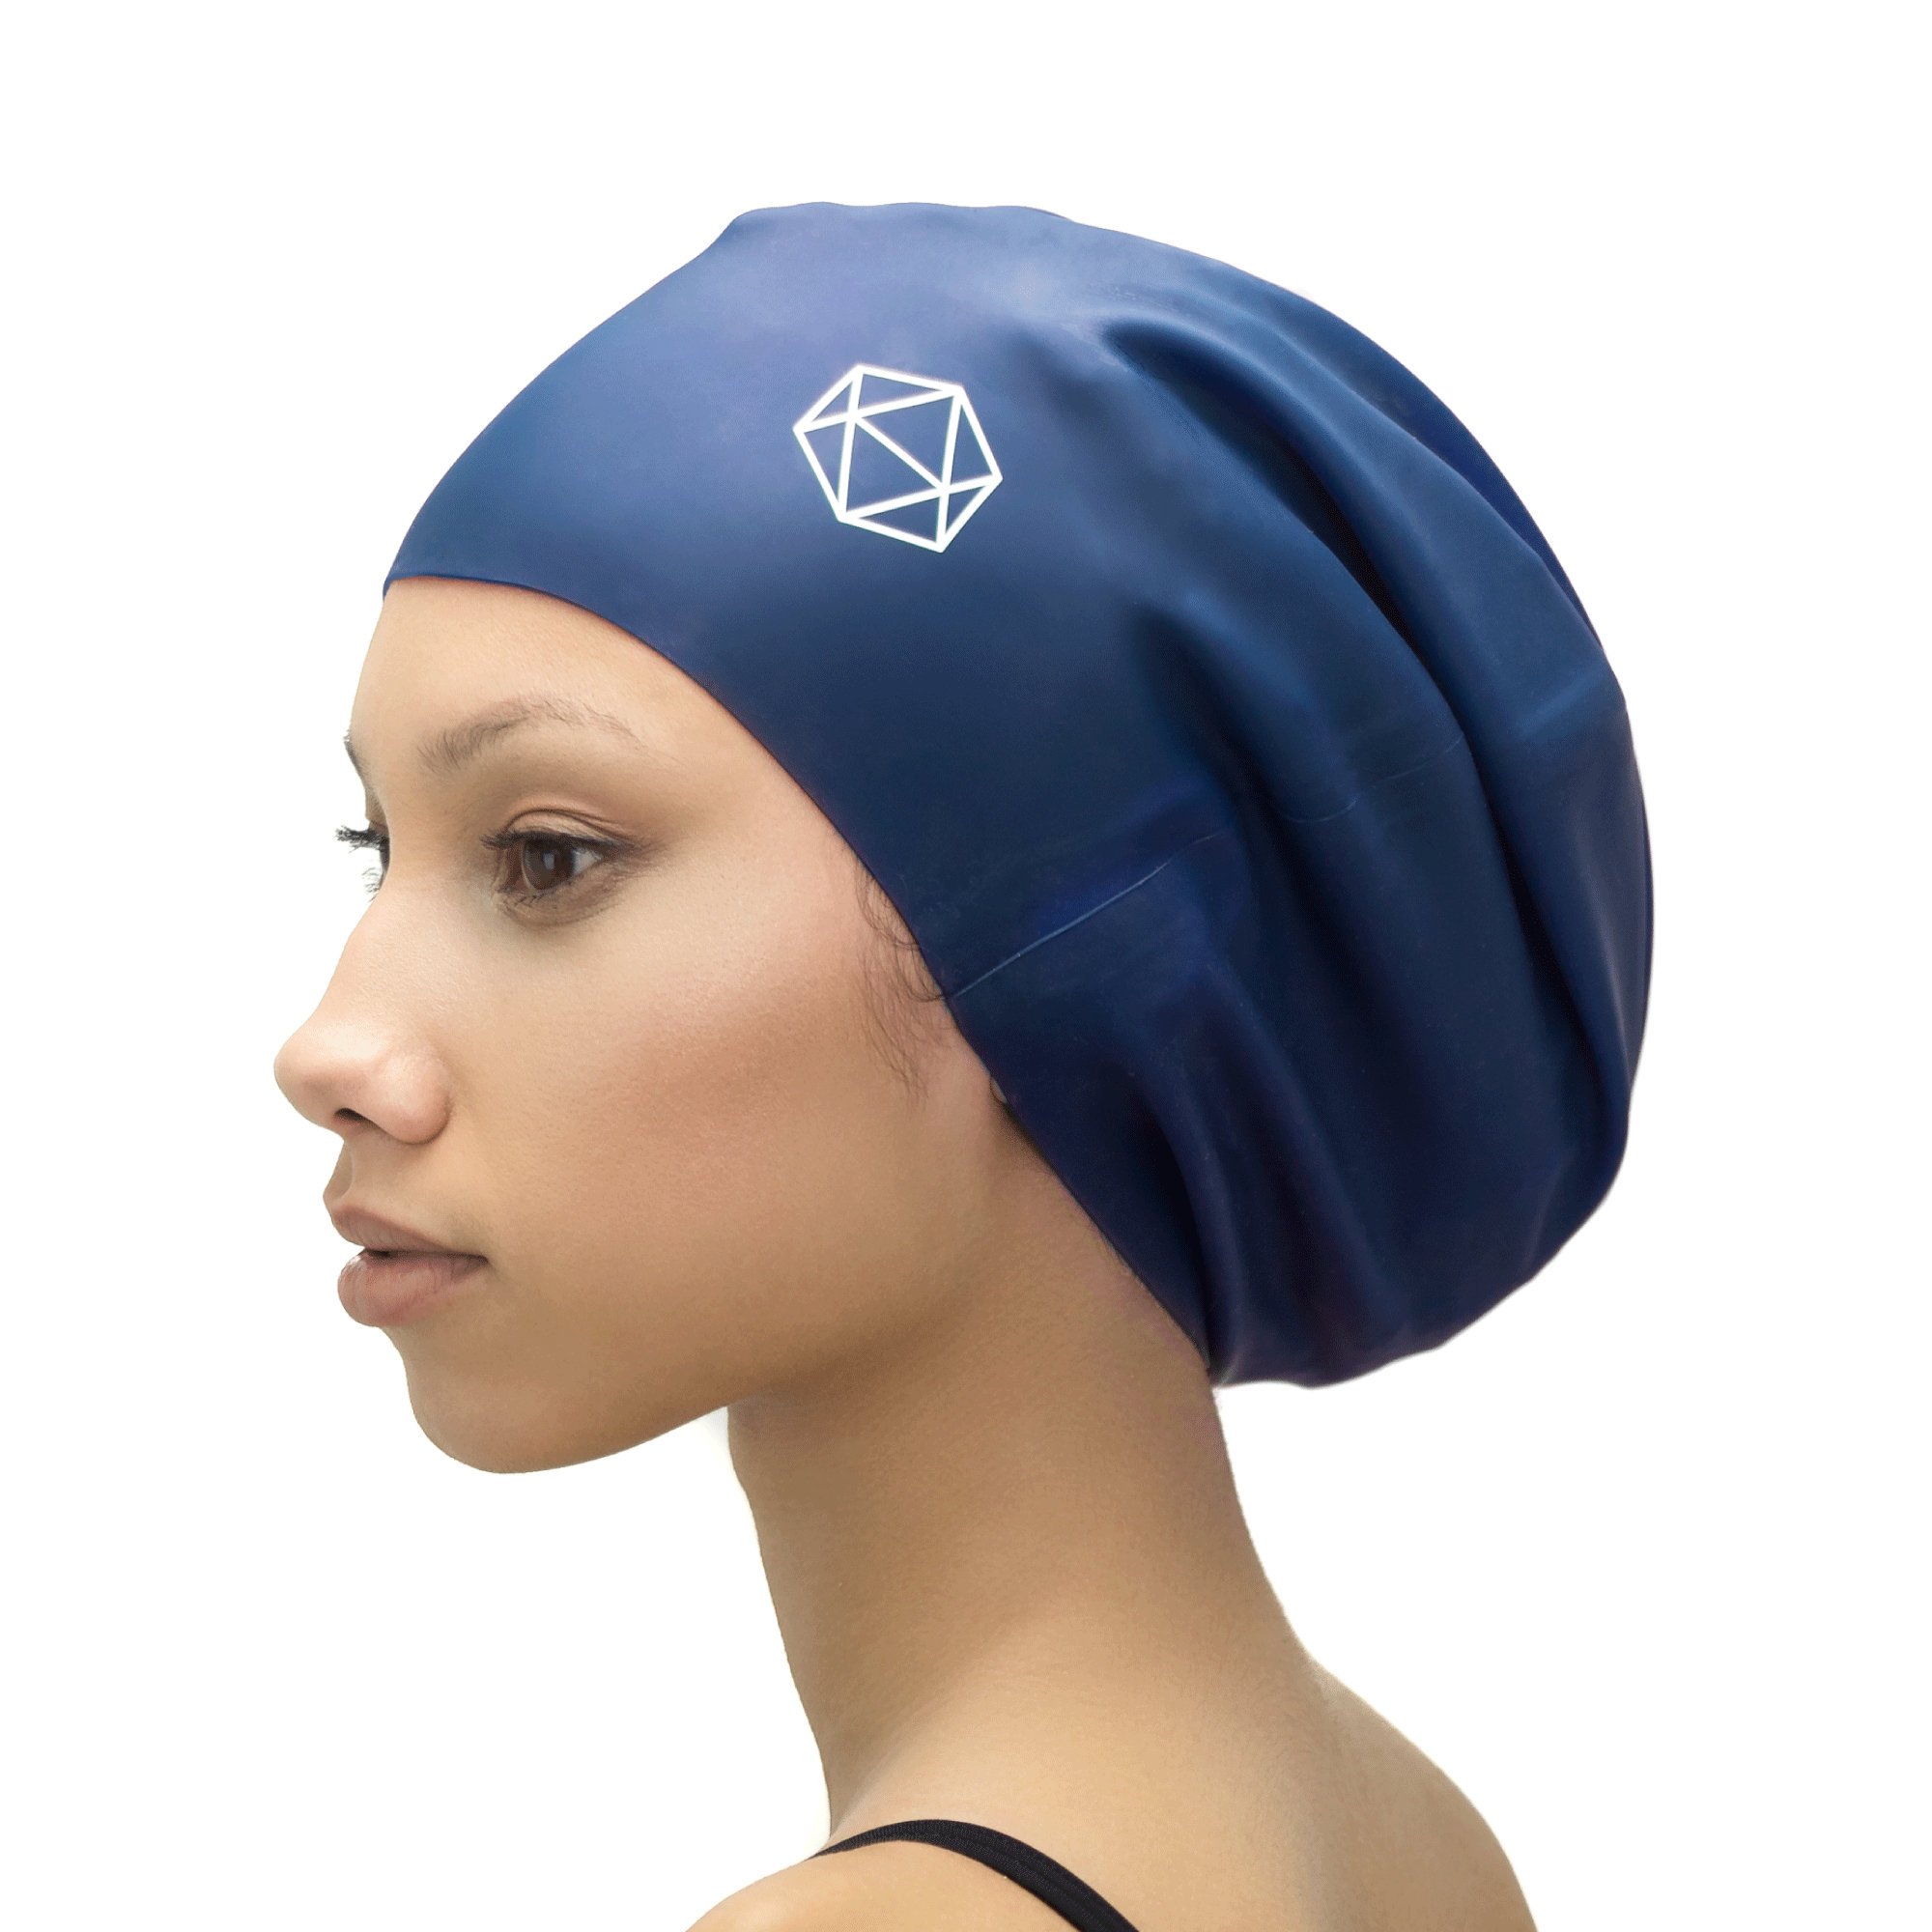 ซื้อ XL Swim Cap for Locs - หมวกอาบน้ำ หมวกอาบน้ำสำหรับเดรดล็อกส์ dreads afros rasta braids ส่วนขยาย braids